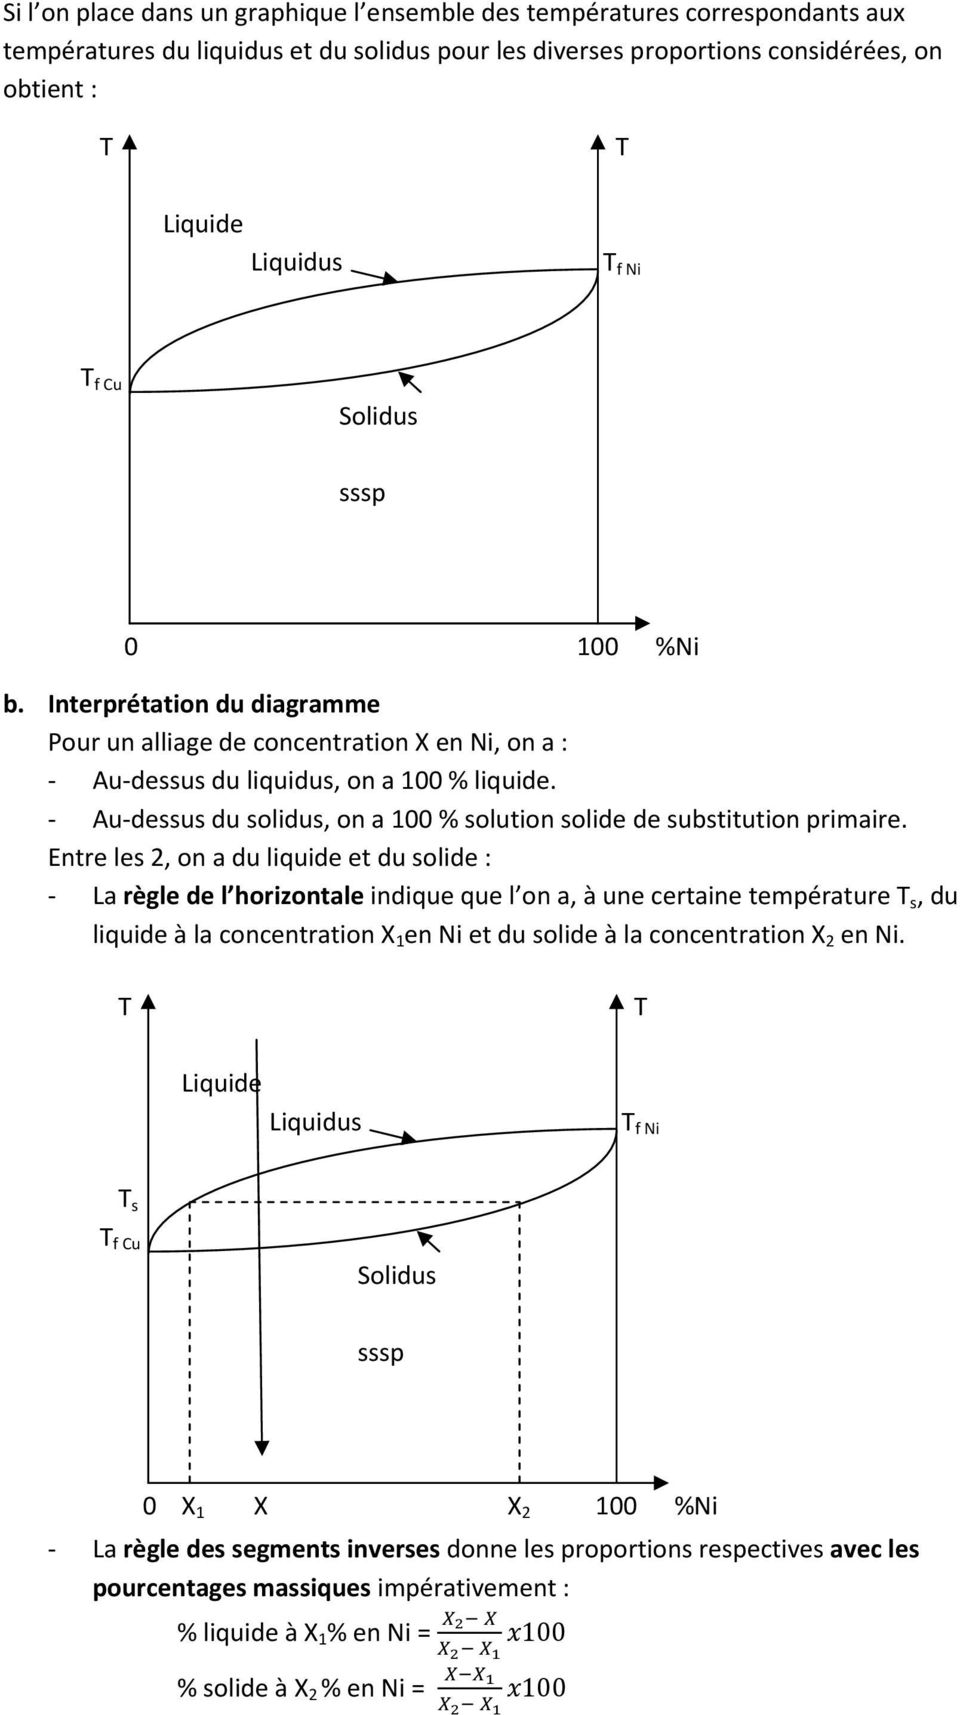 Enre les 2, on a du liquide e du solide : La règle de l horizonale indique que l on a, à une ceraine empéraure s, du liquide à la concenraion X 1 en Ni e du solide à la concenraion X 2 en Ni.